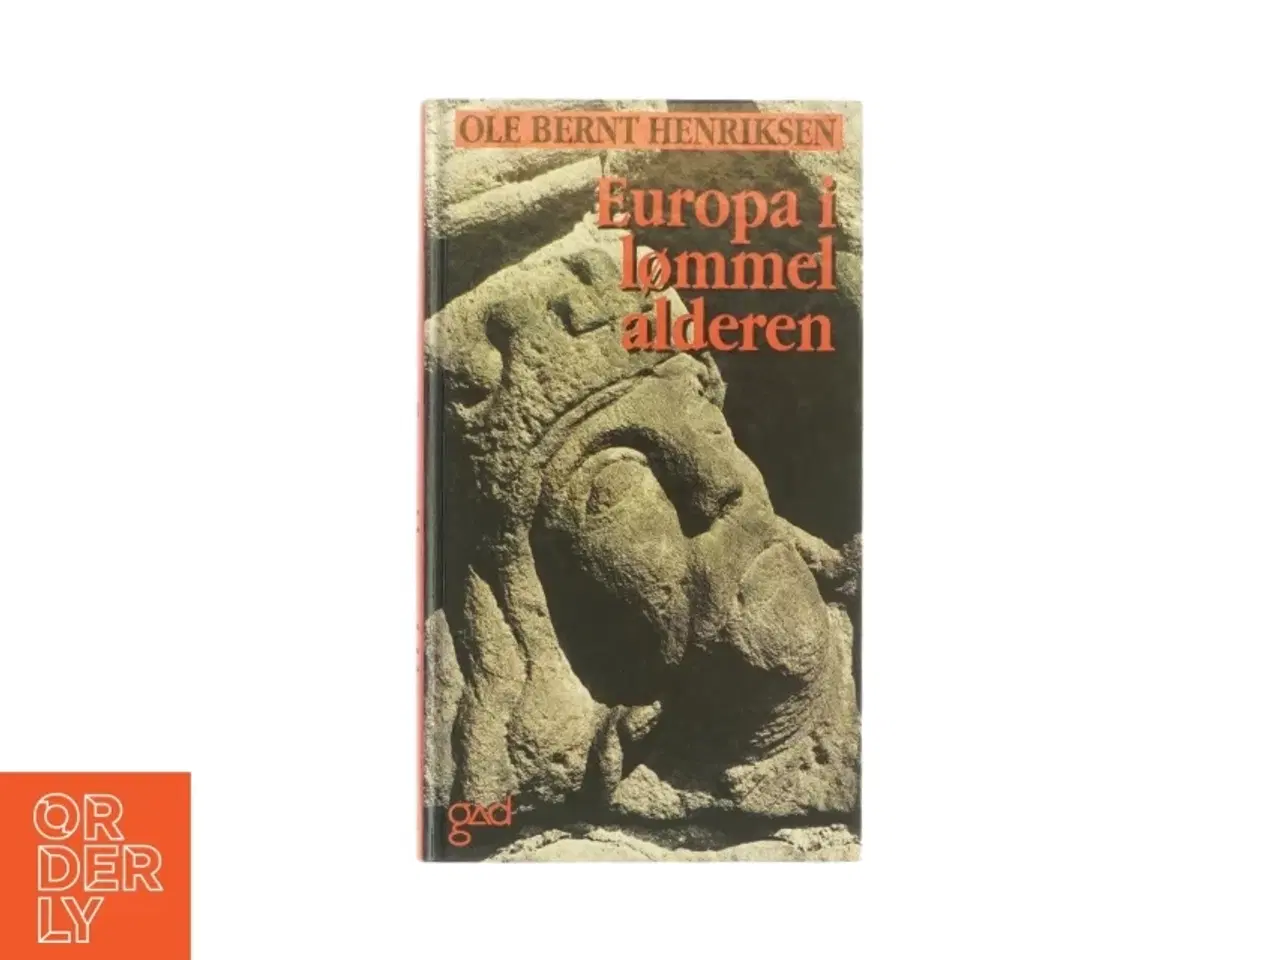 Billede 1 - Europa i lømmel alderen af Ole Bernt Henriksen (bog)